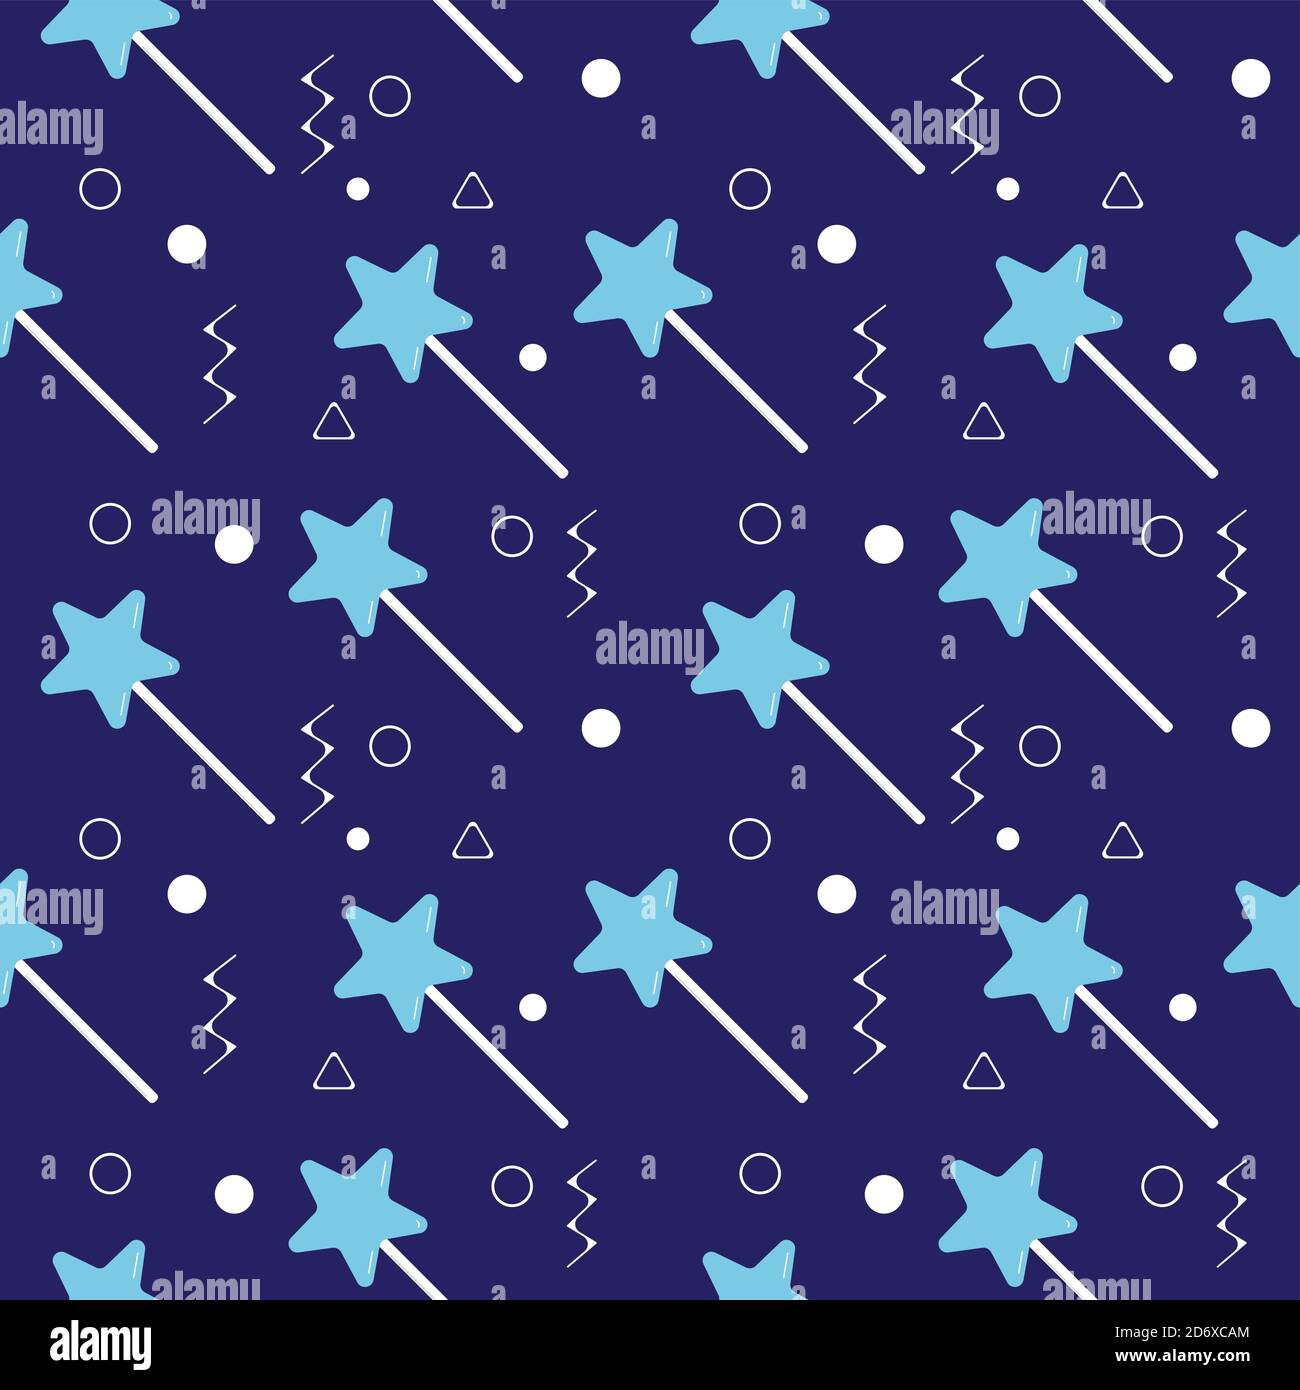 Sternförmige Lollipop nahtlose Muster auf dunkelblauem Hintergrund. Hellblaue magische Stick Vektor-Illustration für weihnachten, Neujahr oder halloween Stock Vektor